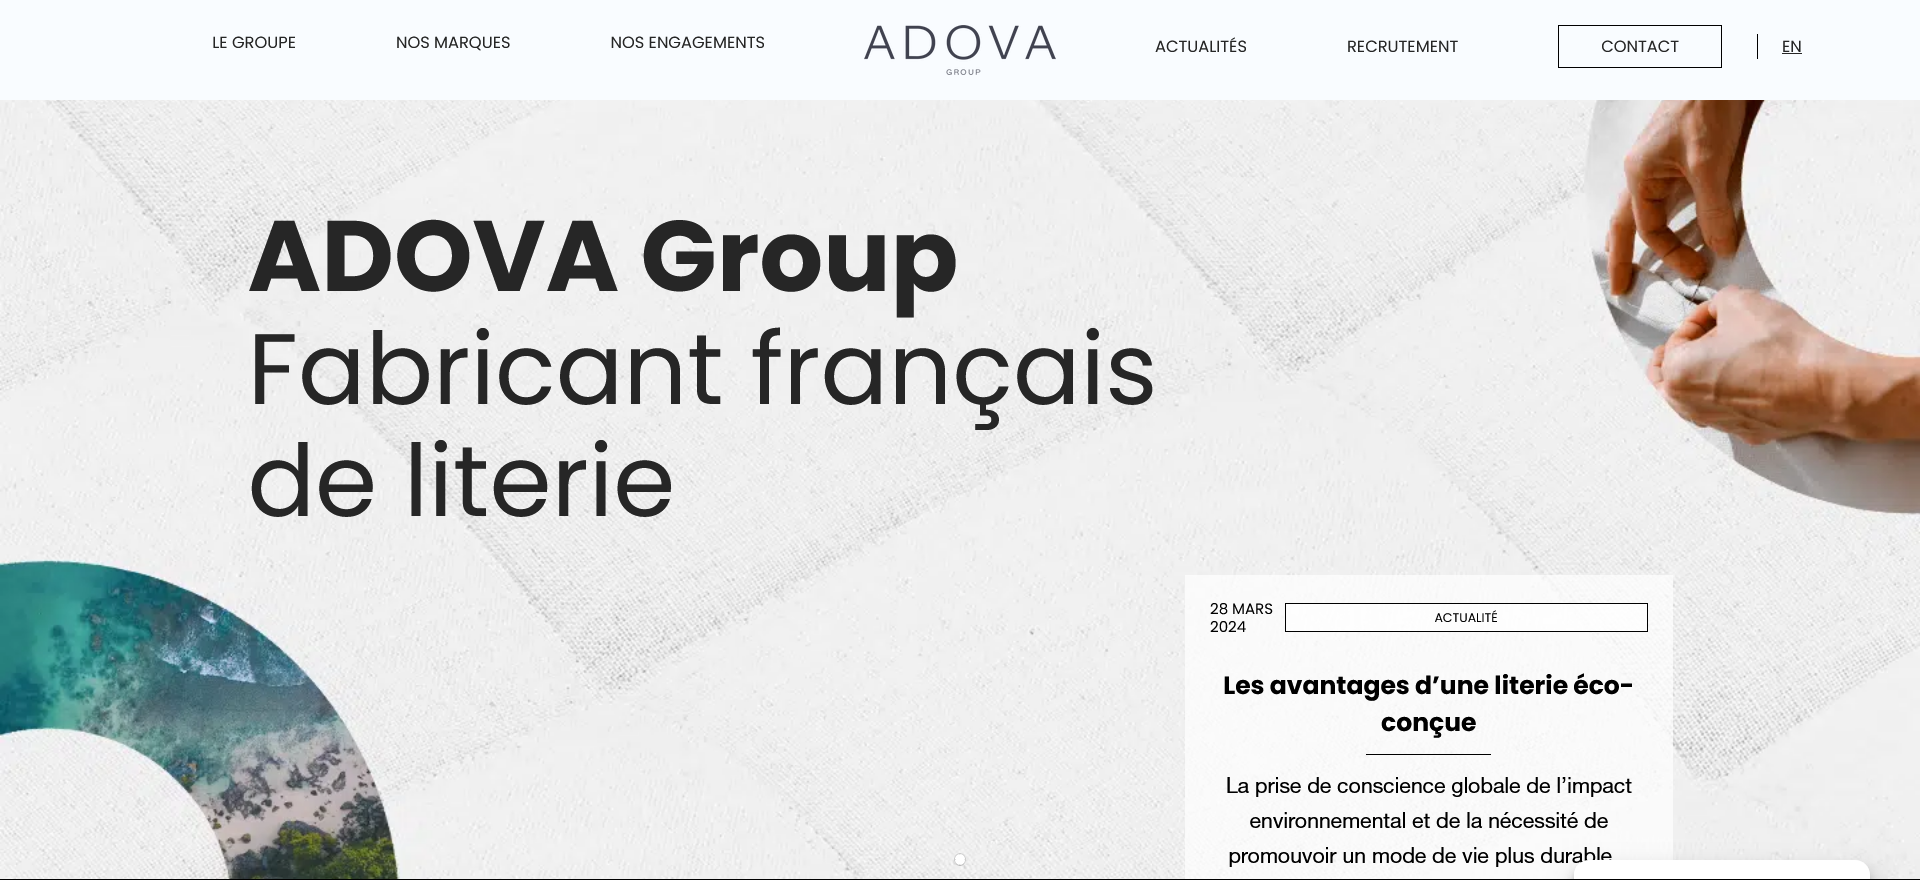 Antoine Colin nommé directeur général d'Adova Group